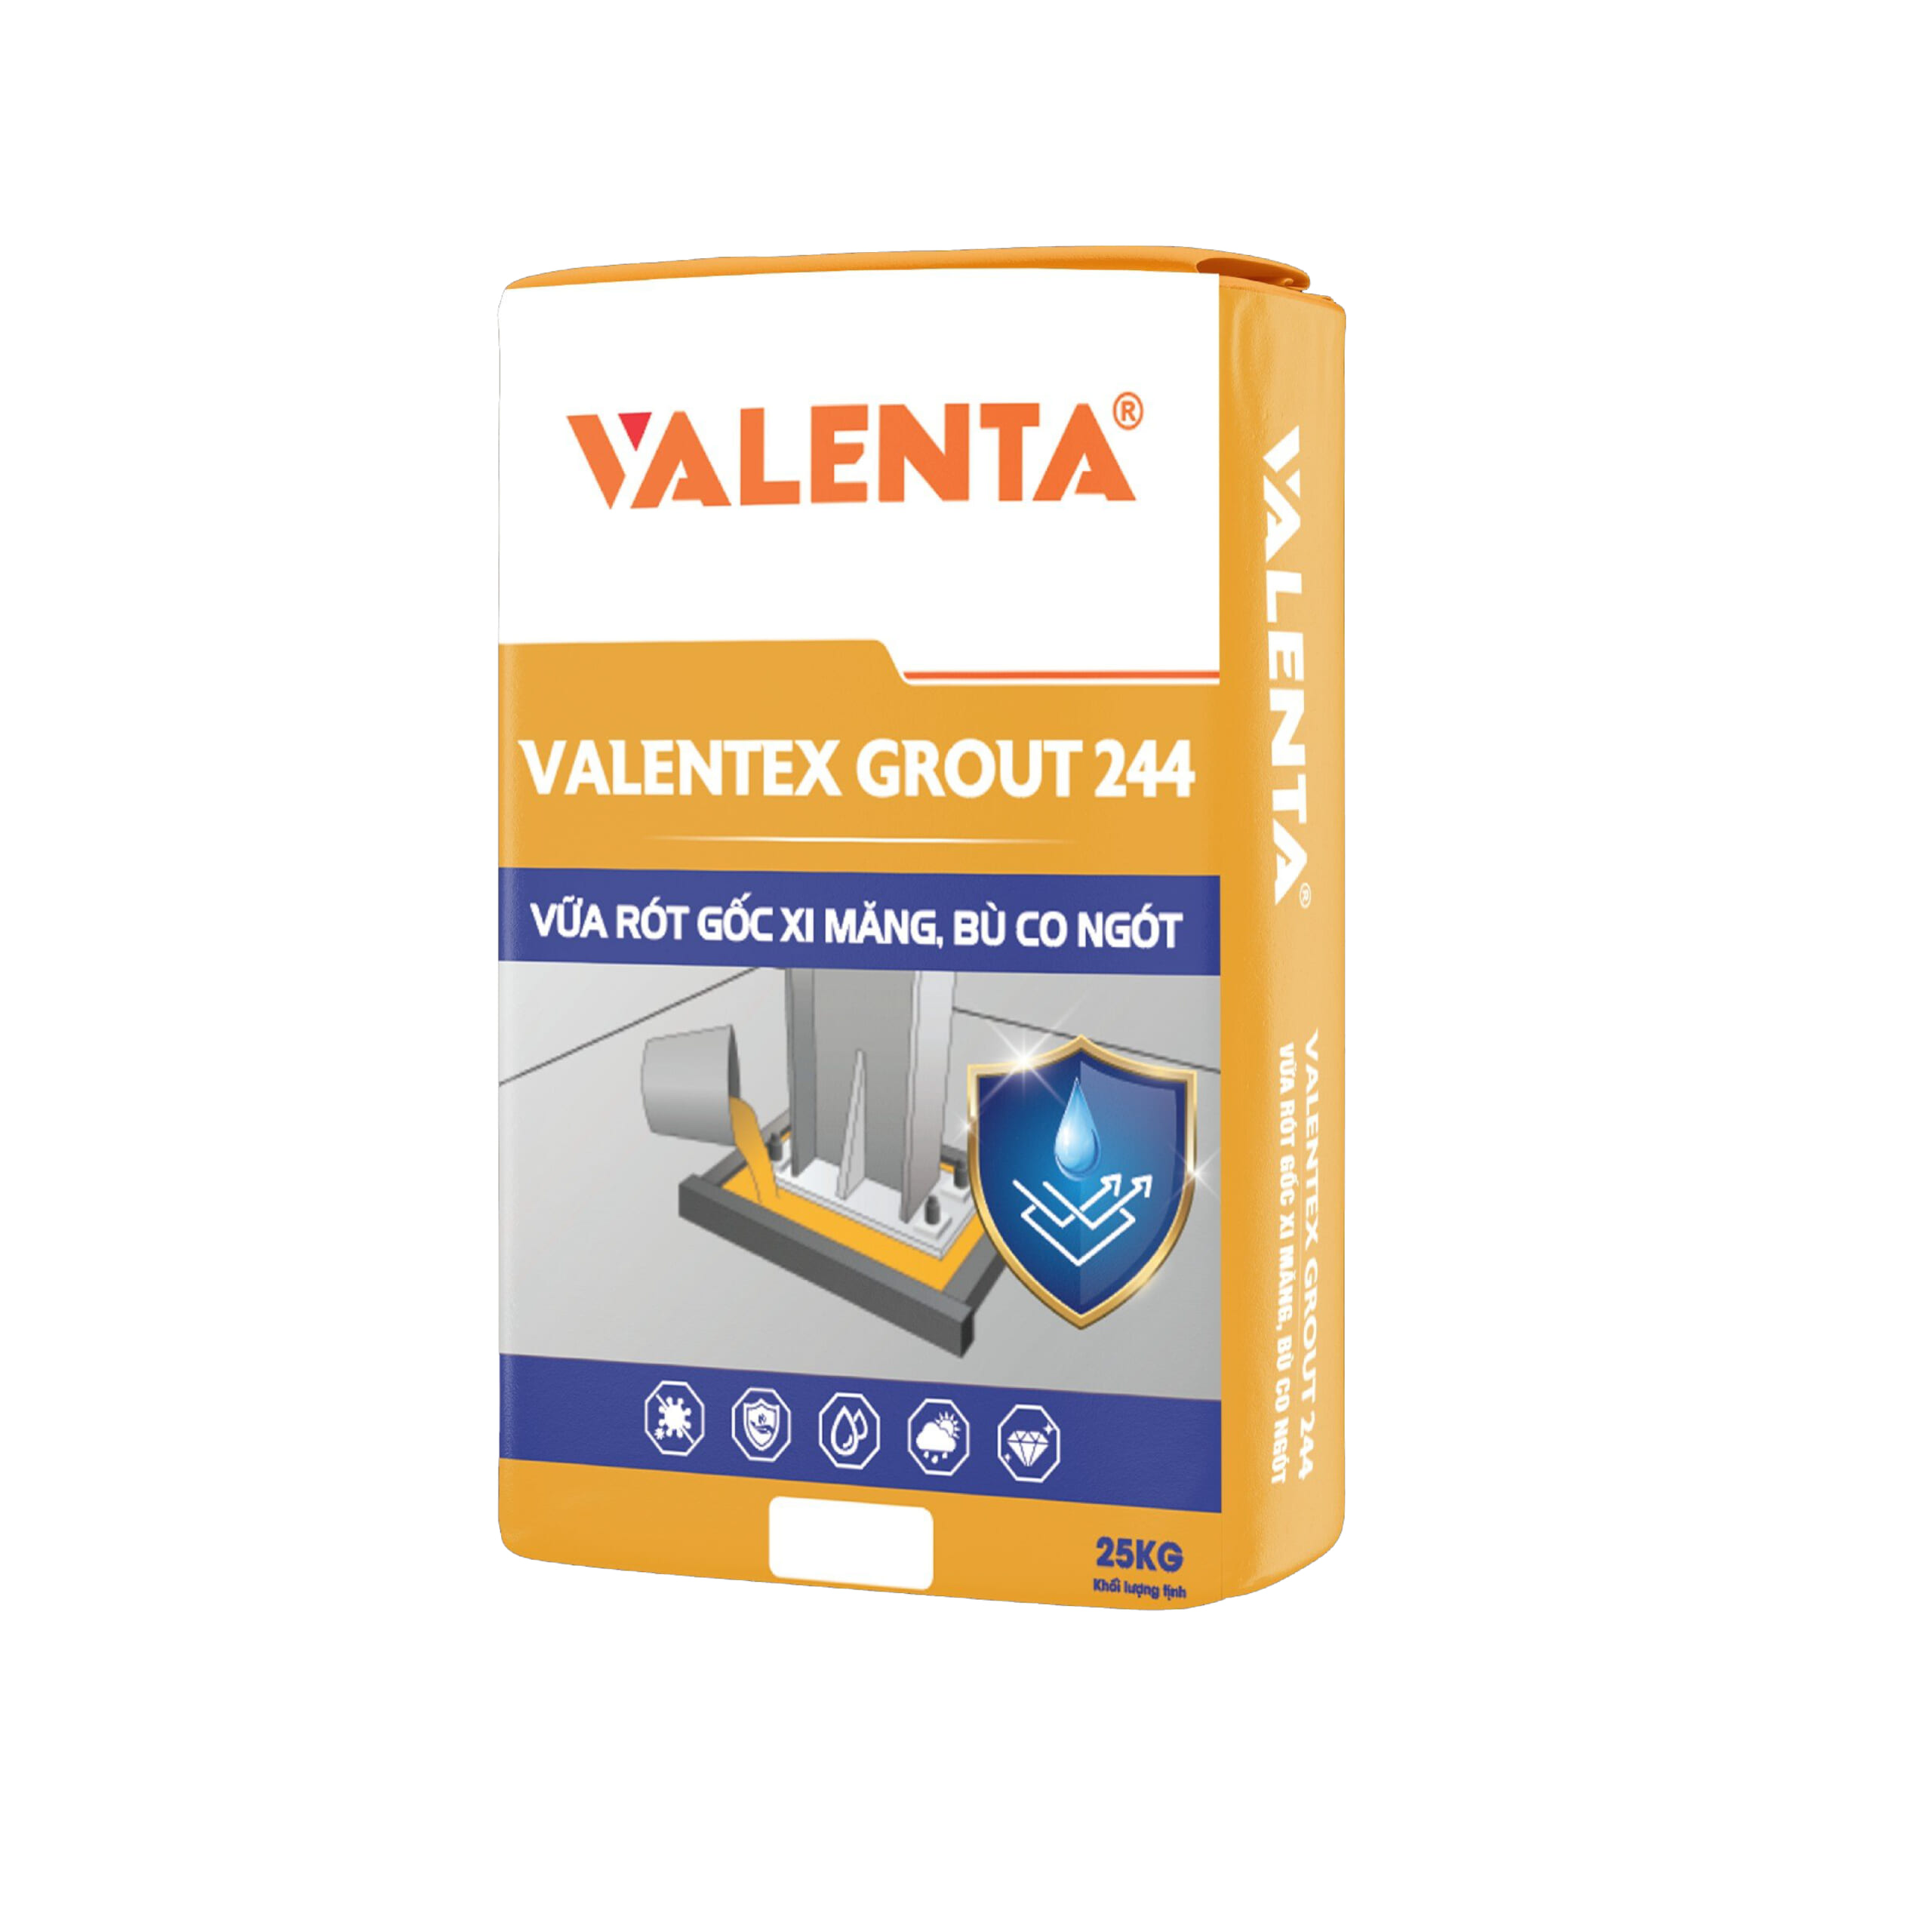 VALENTA GROUT 244